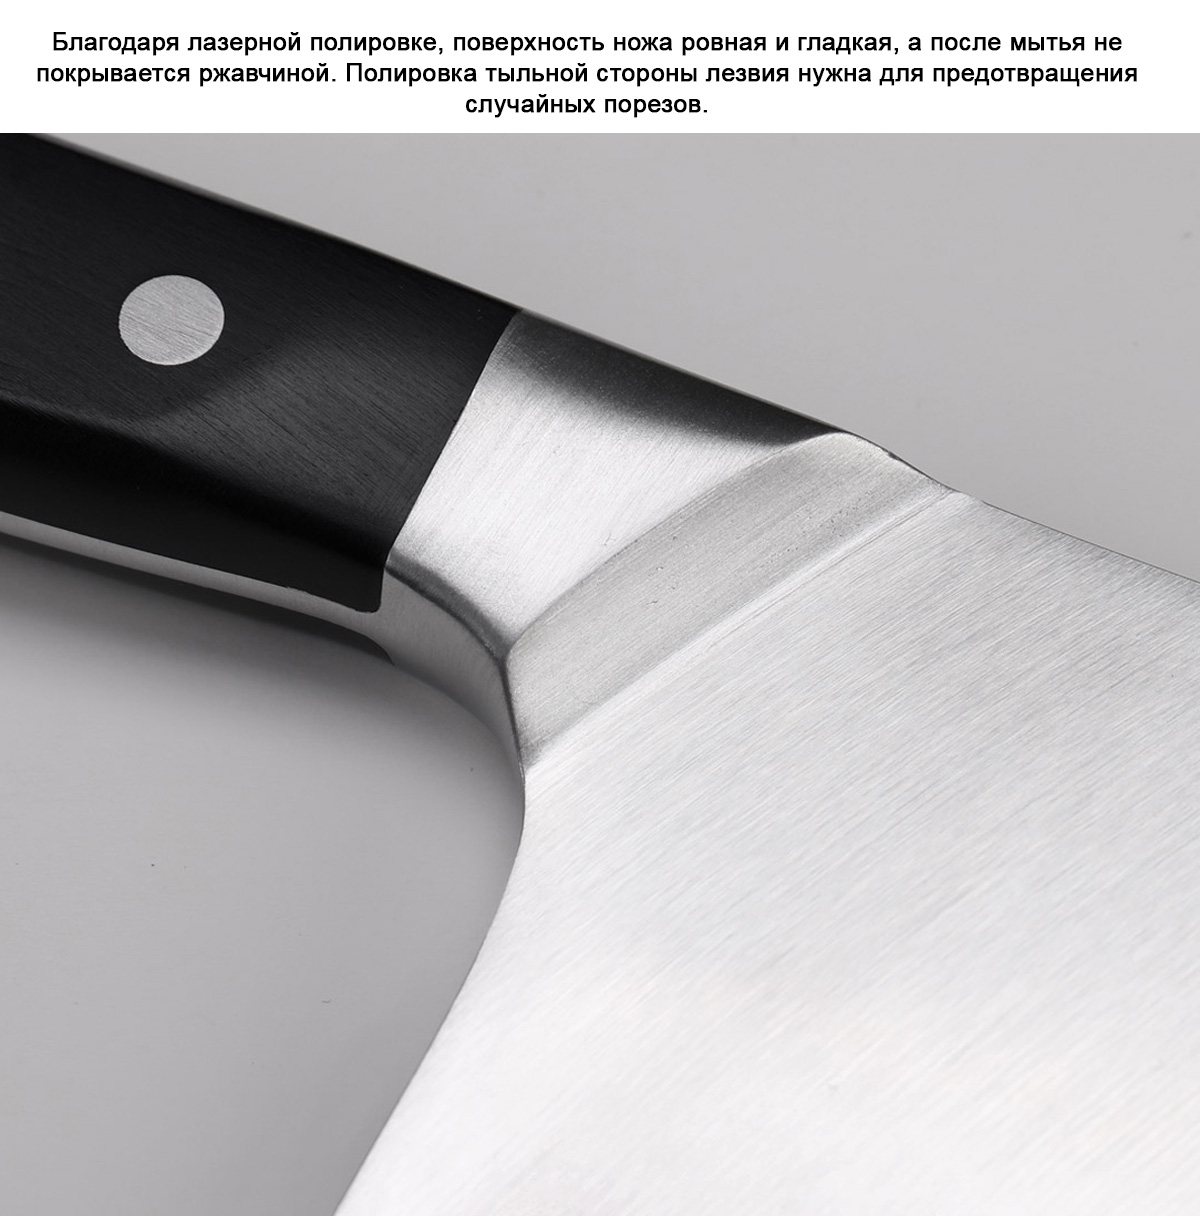 Кухонный нож-топорик для нарезки и разделки Huo Hou (HU0052)